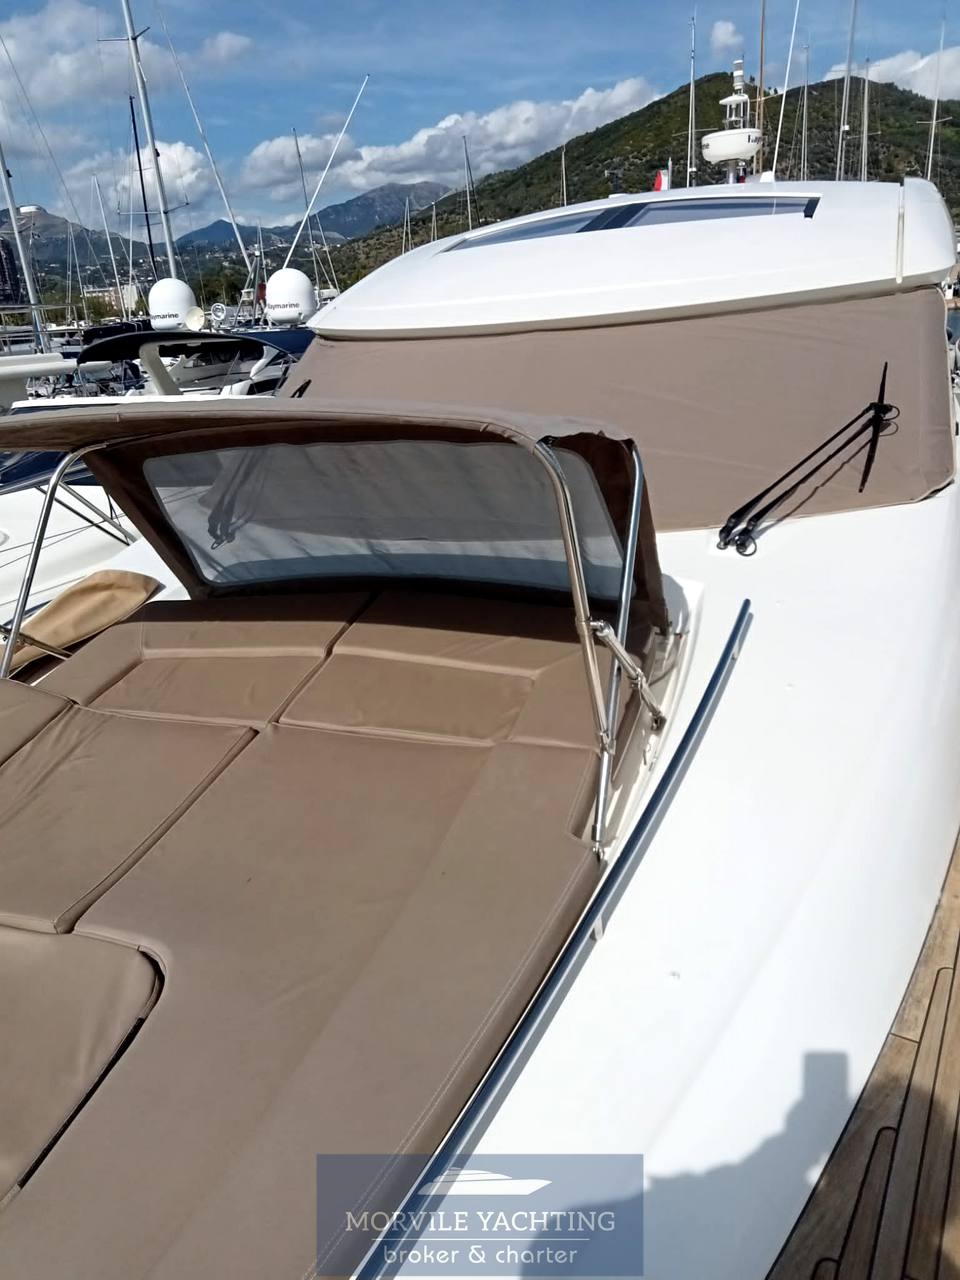 Prestige 500 s Motor boat used for sale